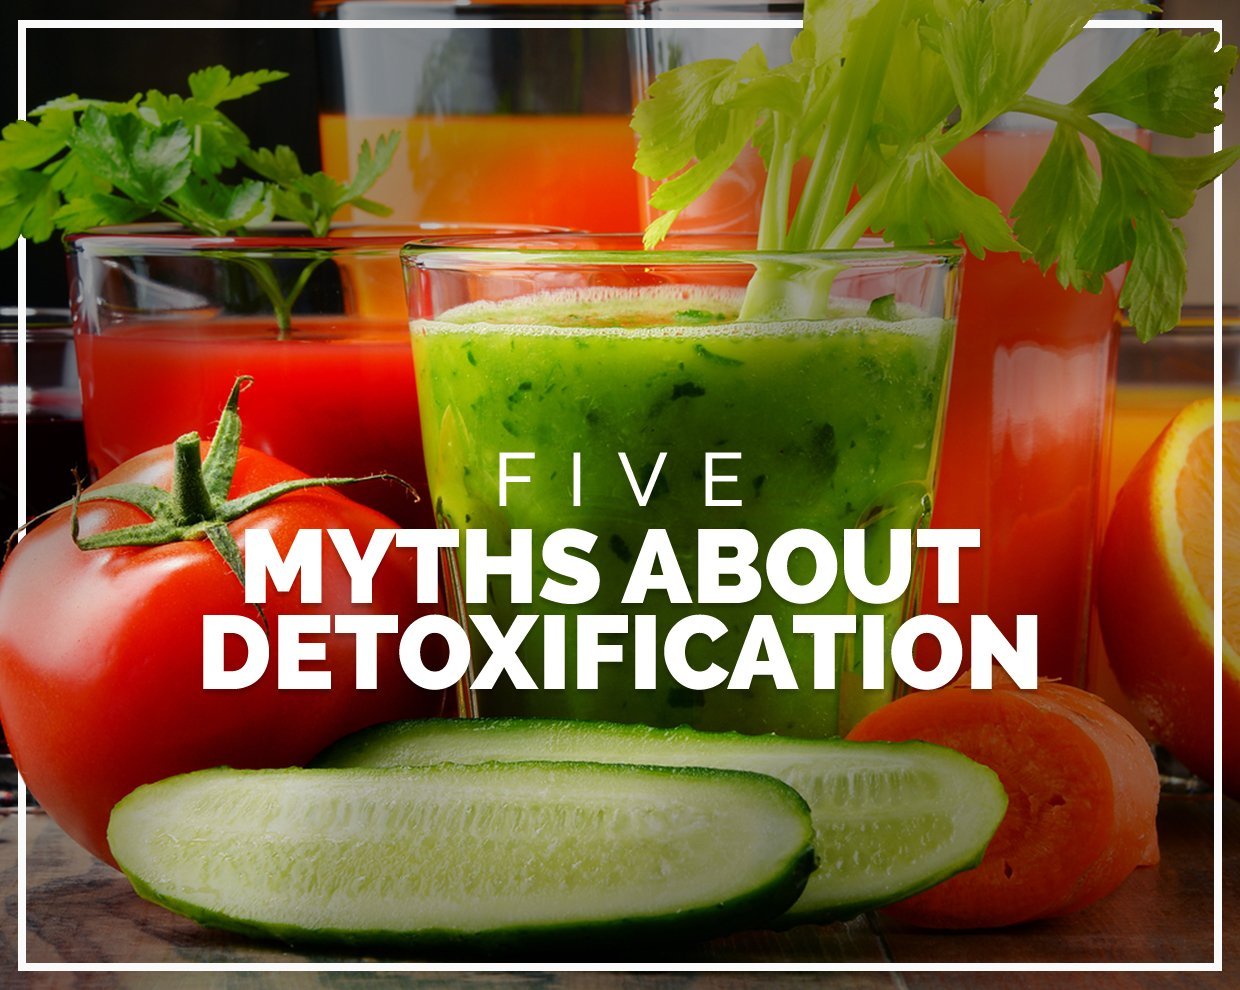 5 myths about detoxification